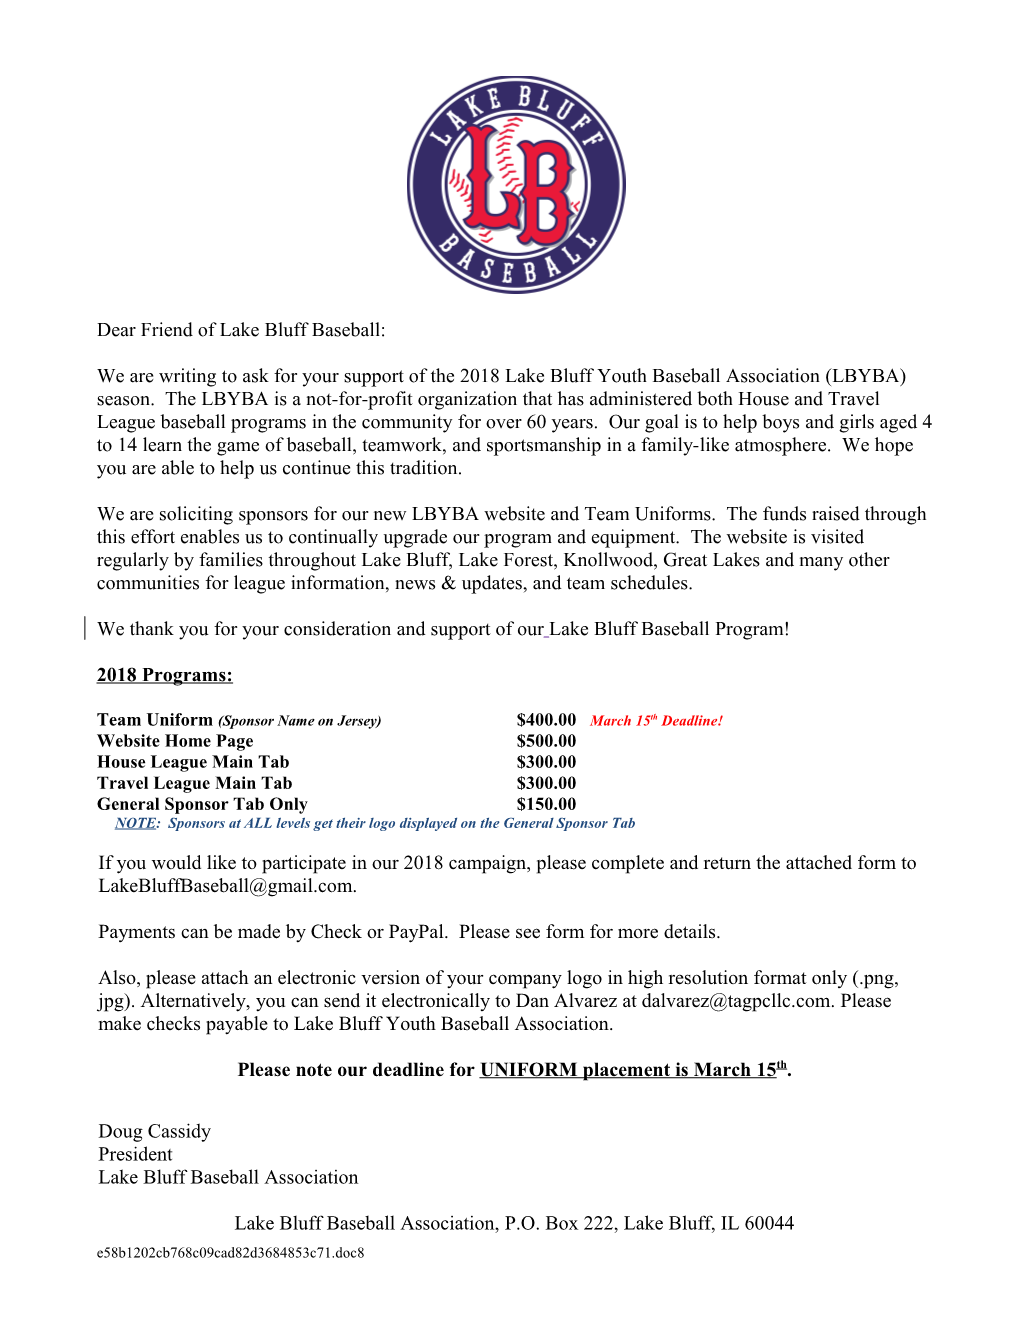 Lake Bluff Baseball Association